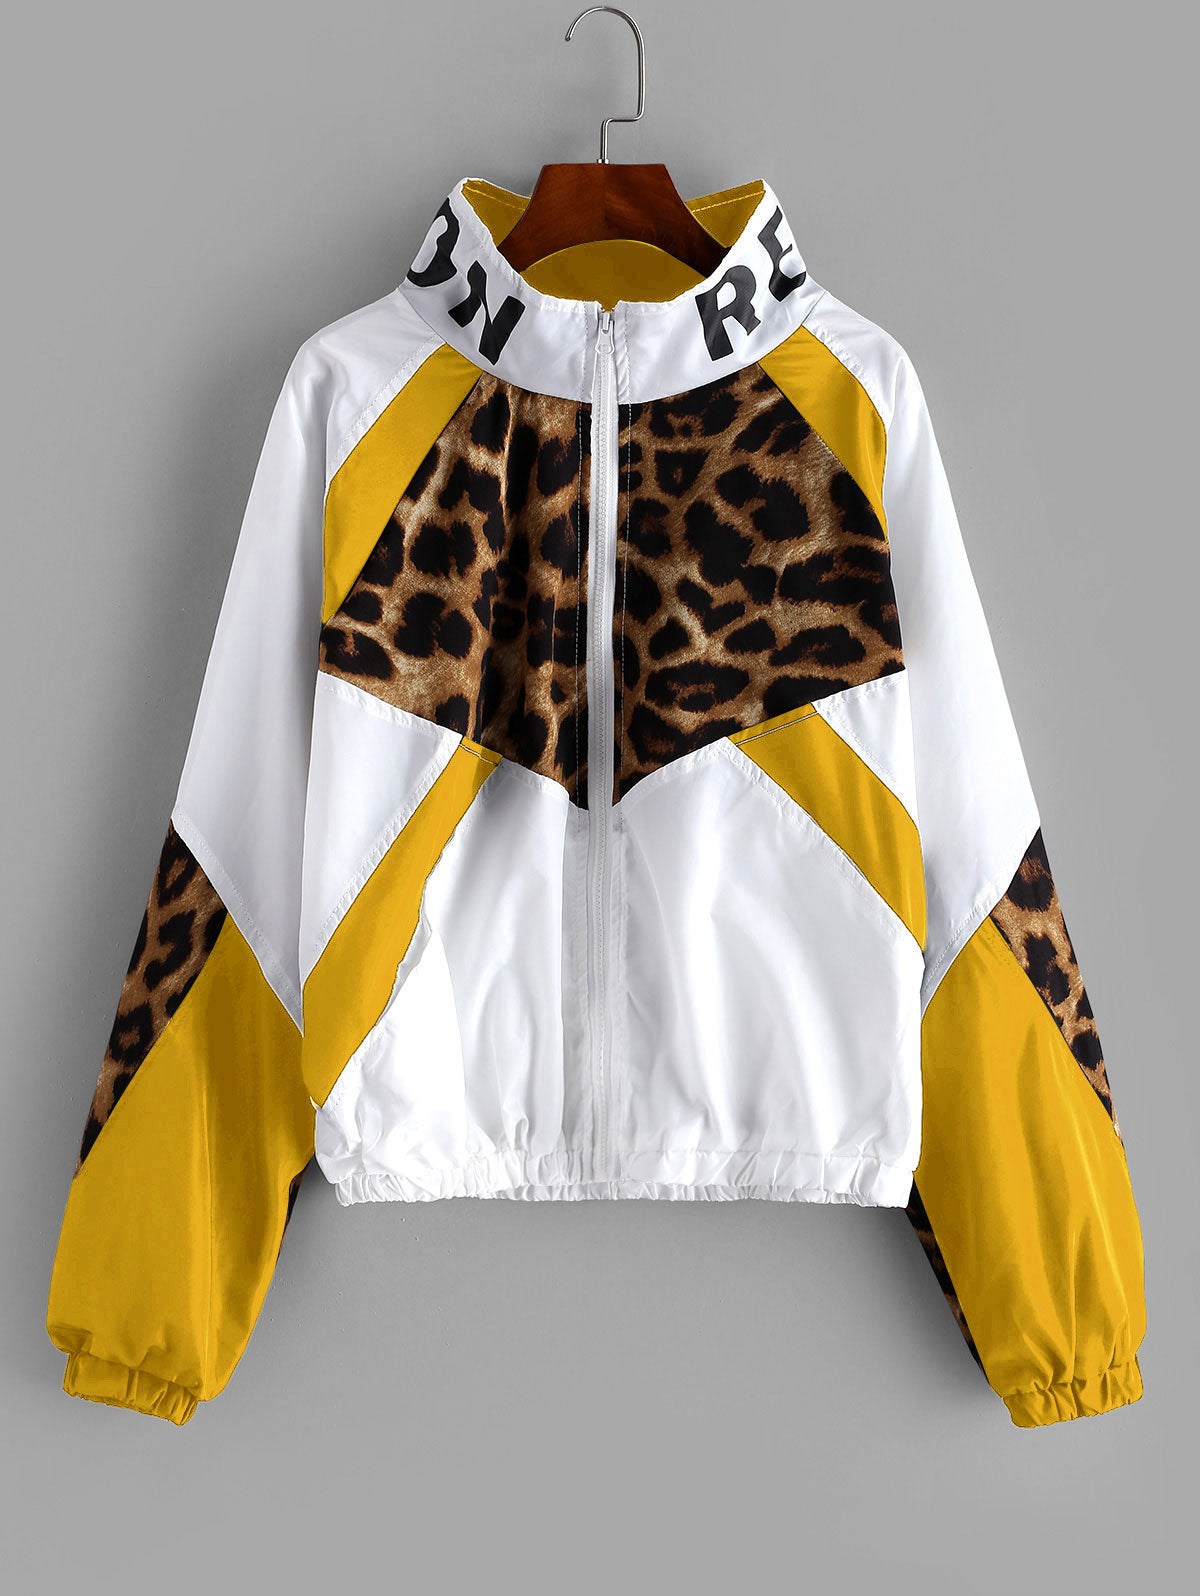 Leopard Jacket Women Zip Front Leopard Colorblock Windbreaker Jacket High Neck Outwear Streetwear Autumn Coats